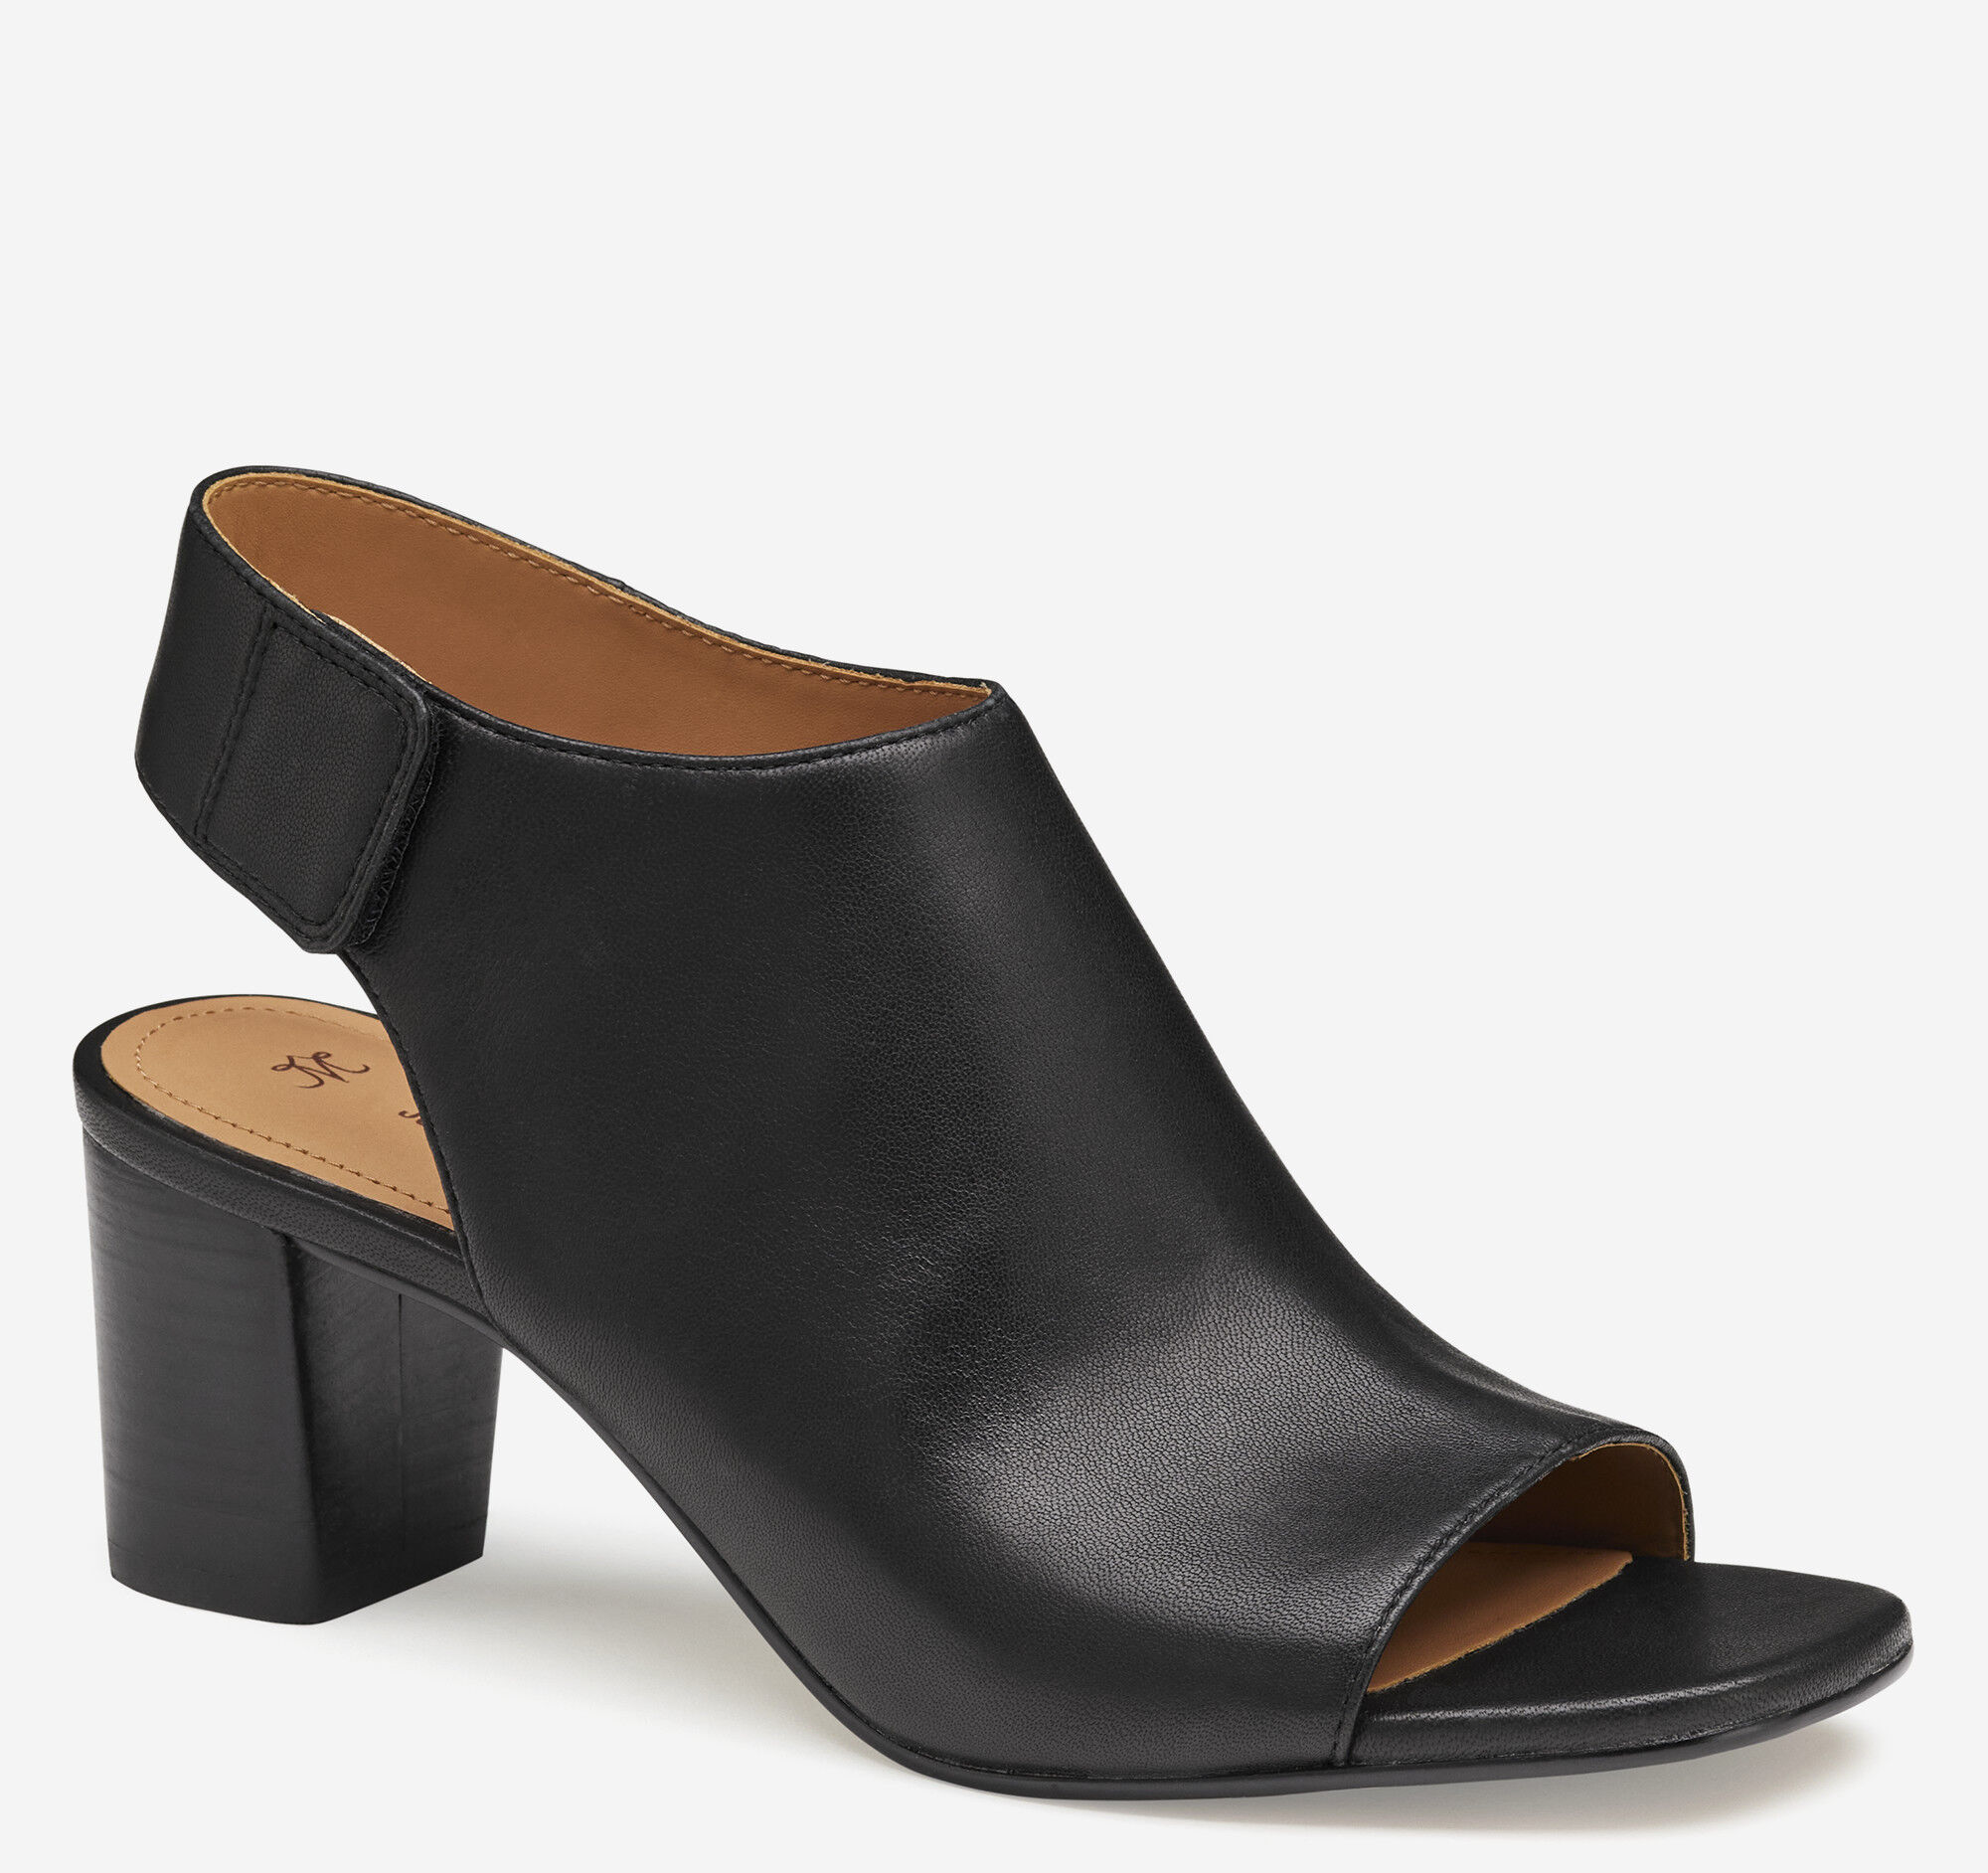 Johnston & Murphy Metallic Bronze Platform Heels | Shoes women heels, Wood  sole sandals, Platform heels